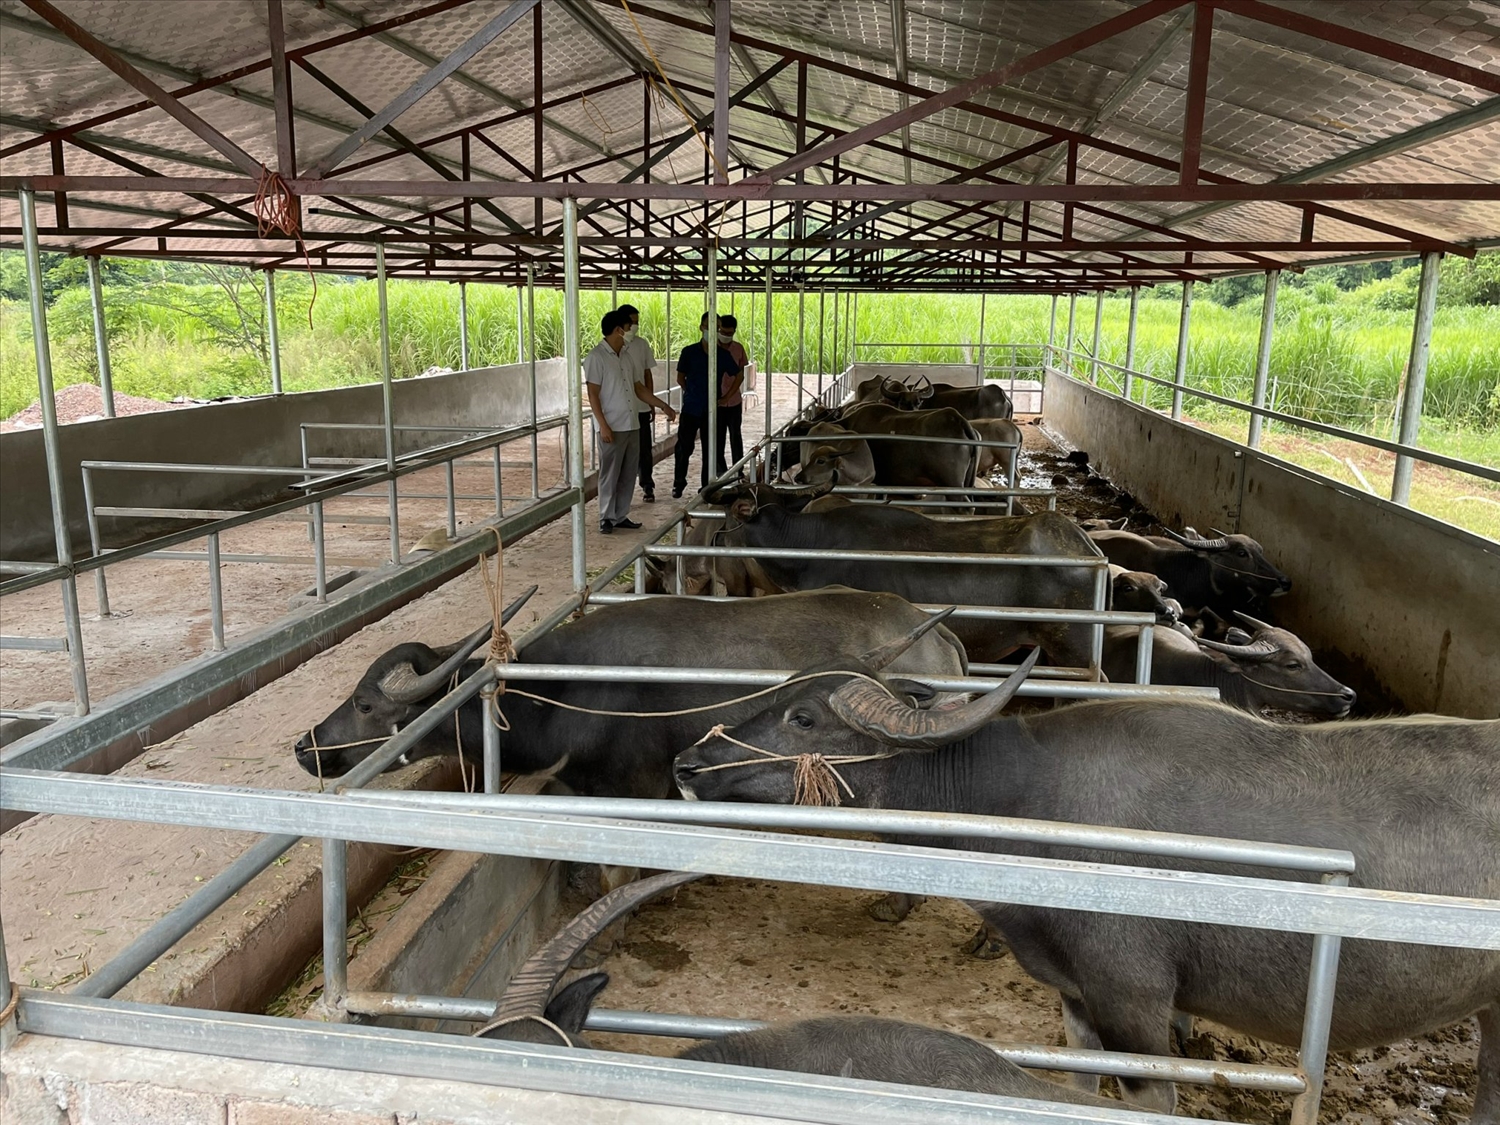 Mô hình chăn nuôi gia súc tập trung ở xã Mường Nhé, huyện Mường Nhé, Điện Biên mang lại hiệu quả cao